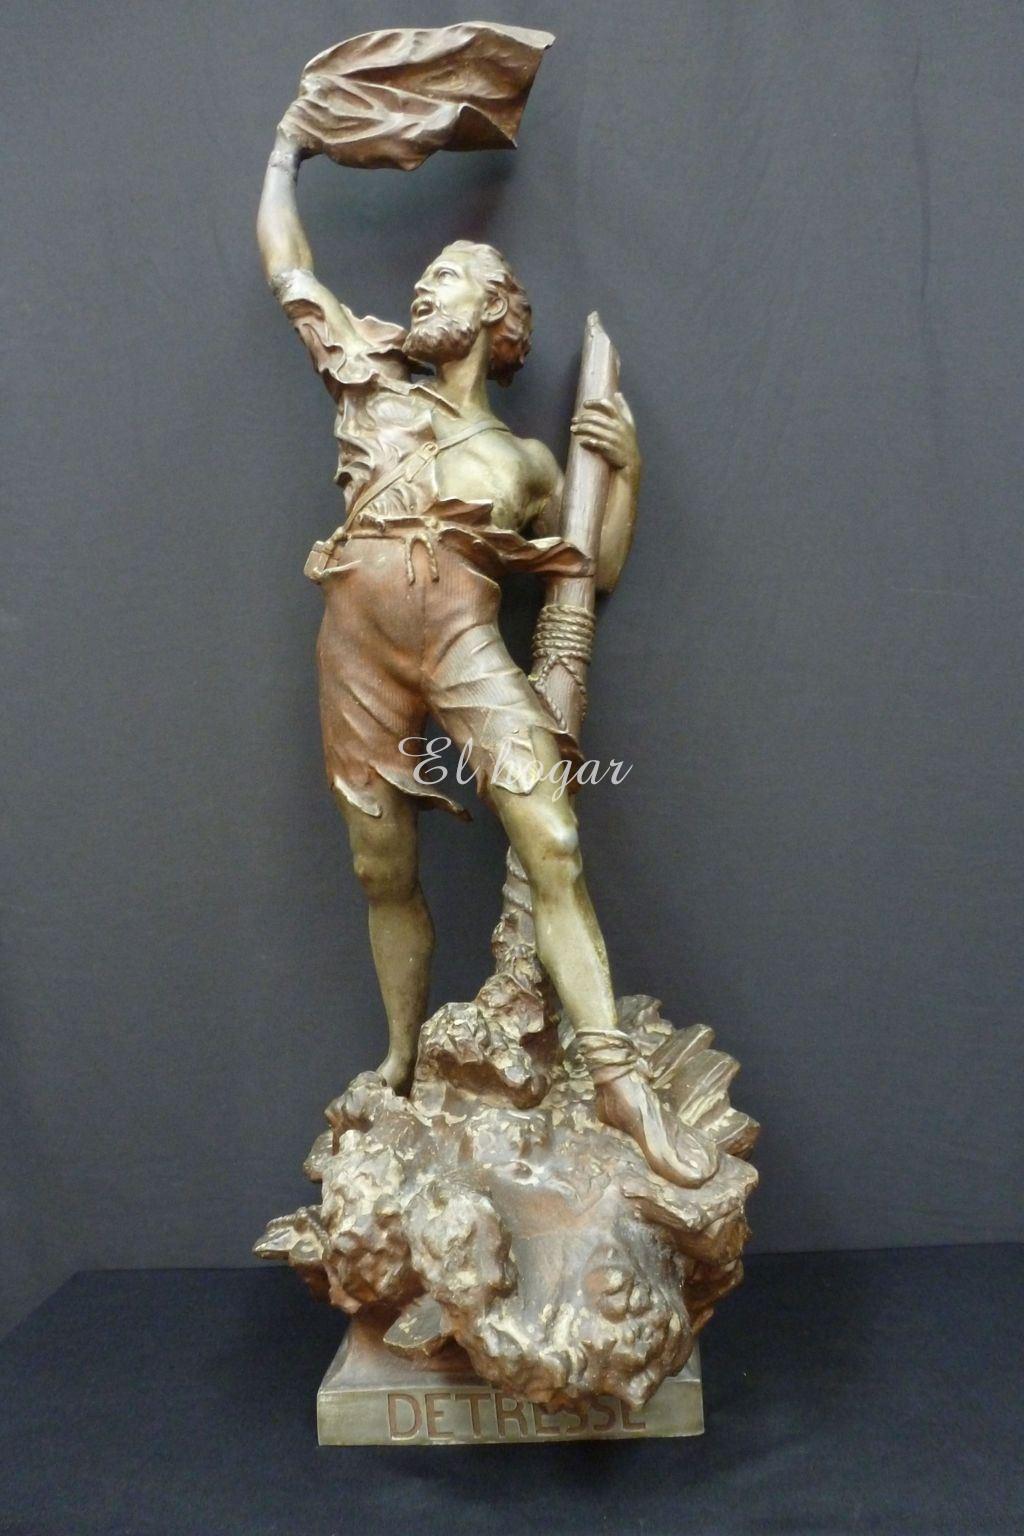 Escultura de calamina titulada " DETRESSE " ( angustia ) del escultor alemán ARTHUR WAAGEN ( 1833-18 - Imagen 2